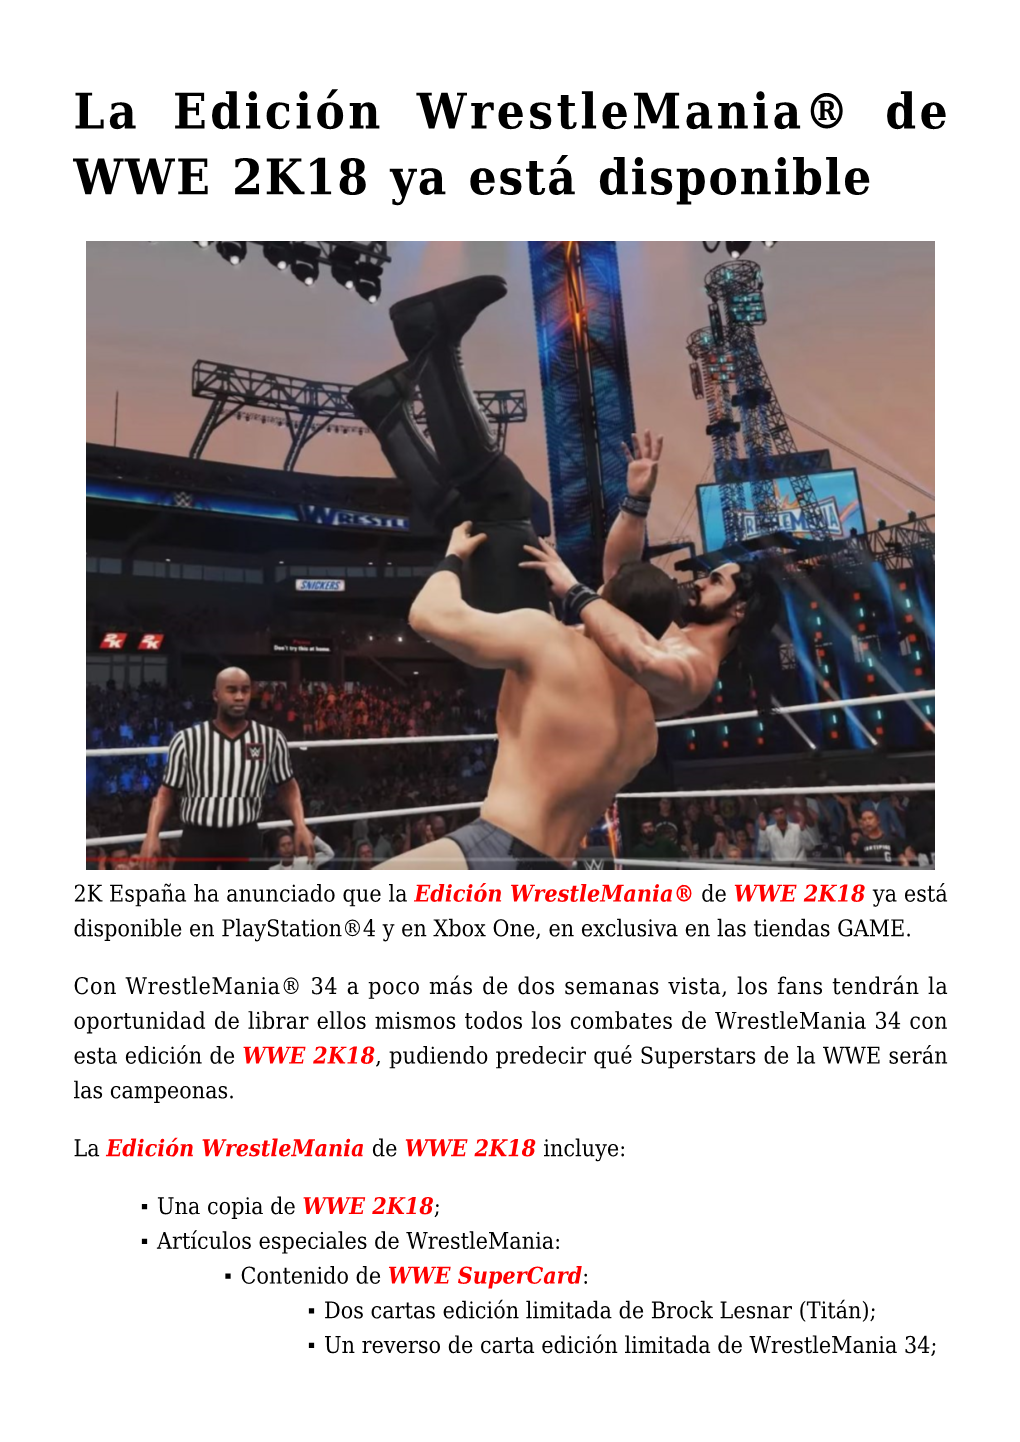 La Edición Wrestlemania® De WWE 2K18 Ya Está Disponible